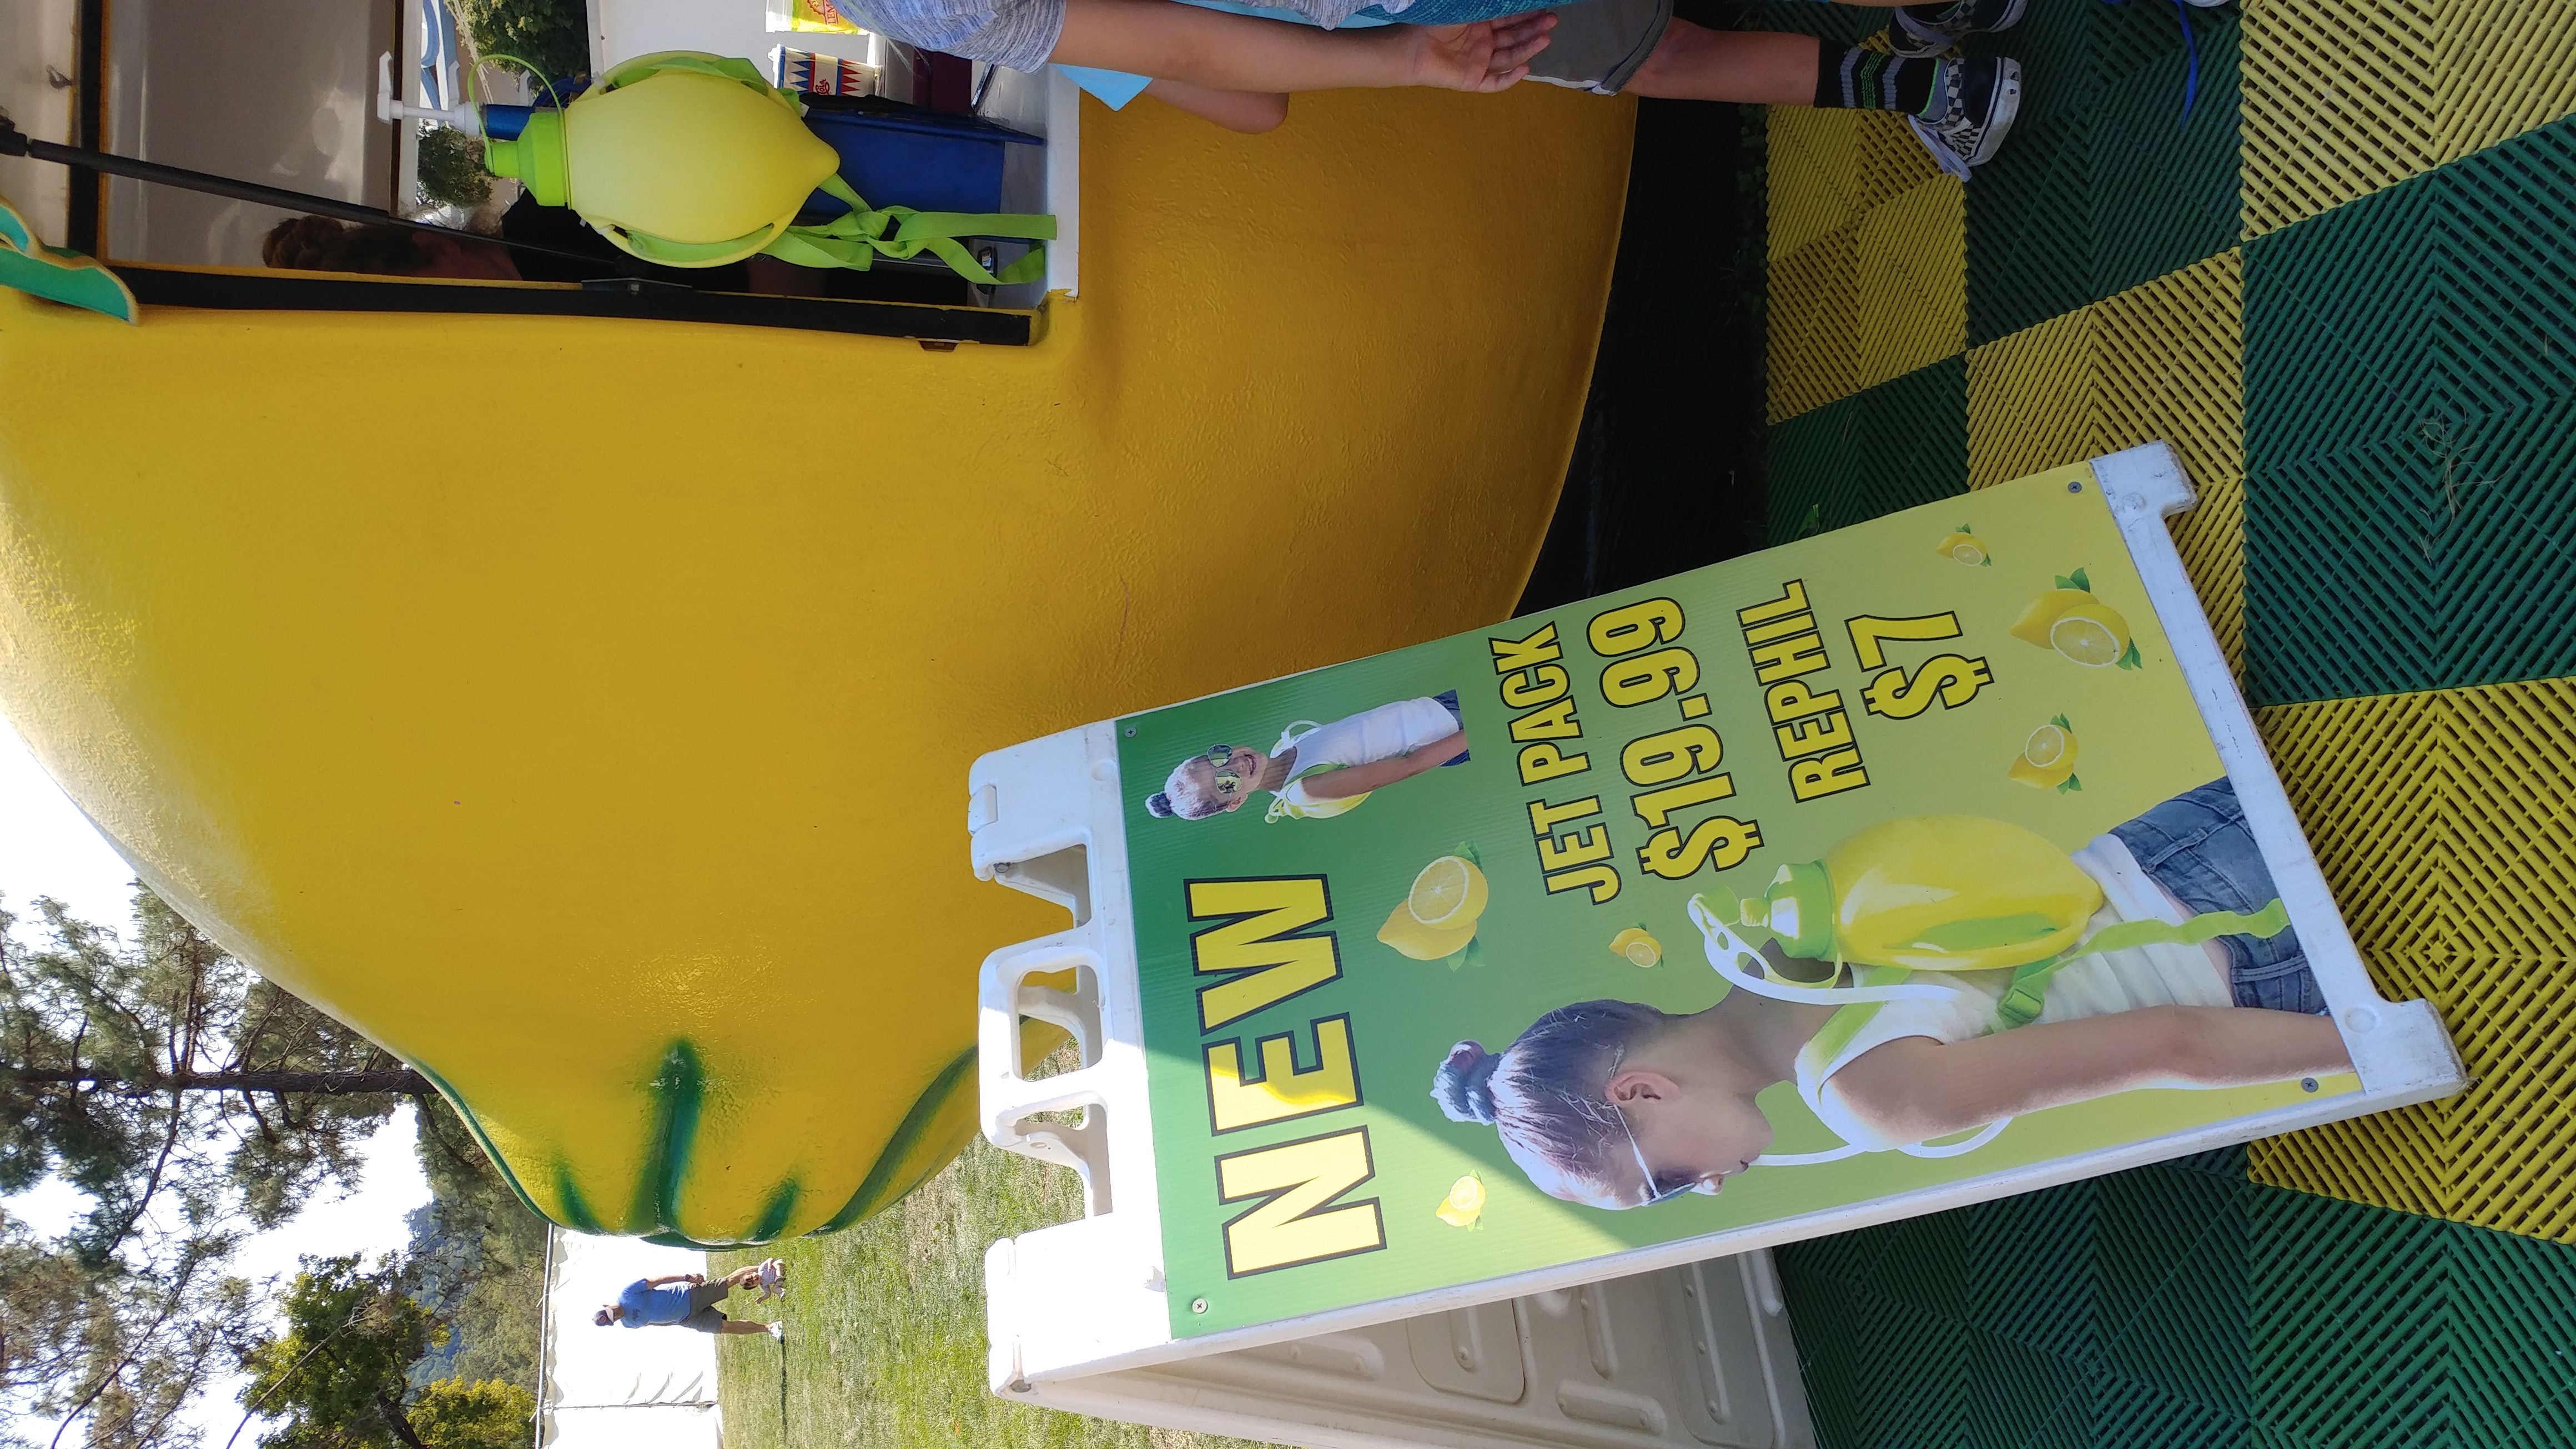 Phil's Lemonade's lemonade jetpack at the Marin County Fair